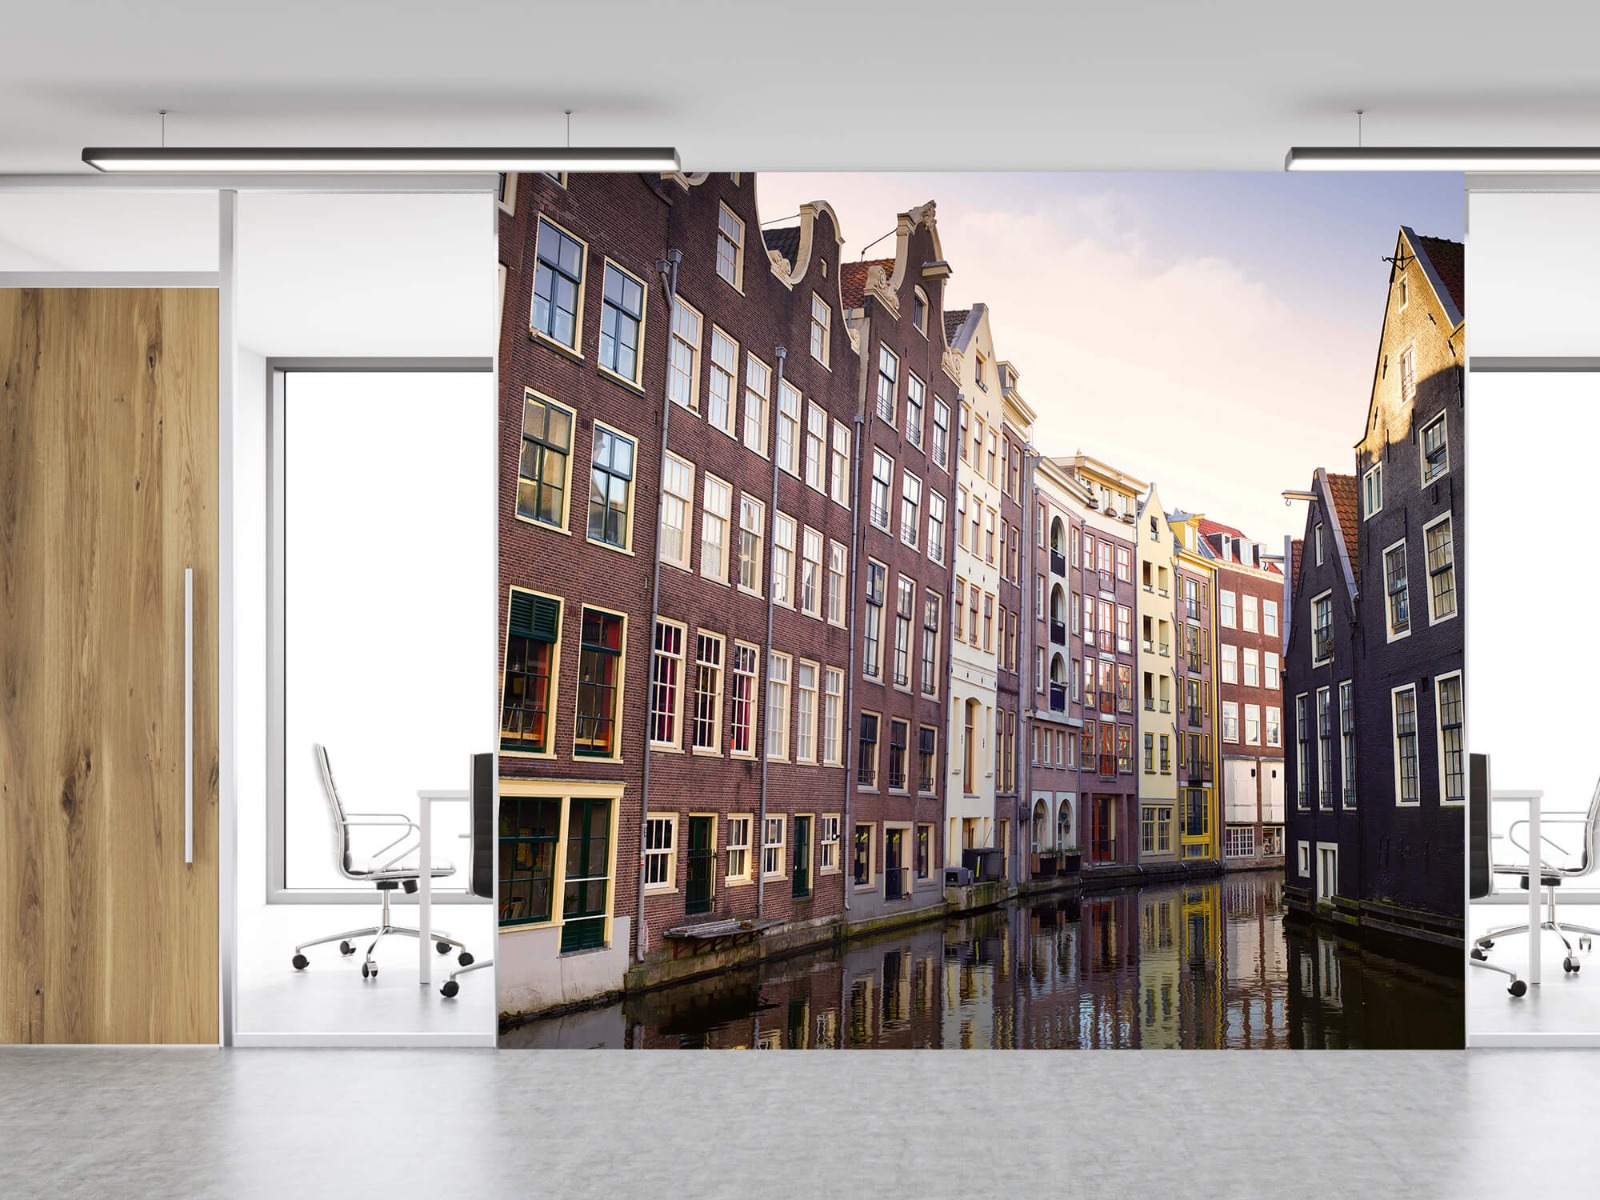 Gebouwen - Amsterdamse huizen aan de gracht - Tienerkamer 12